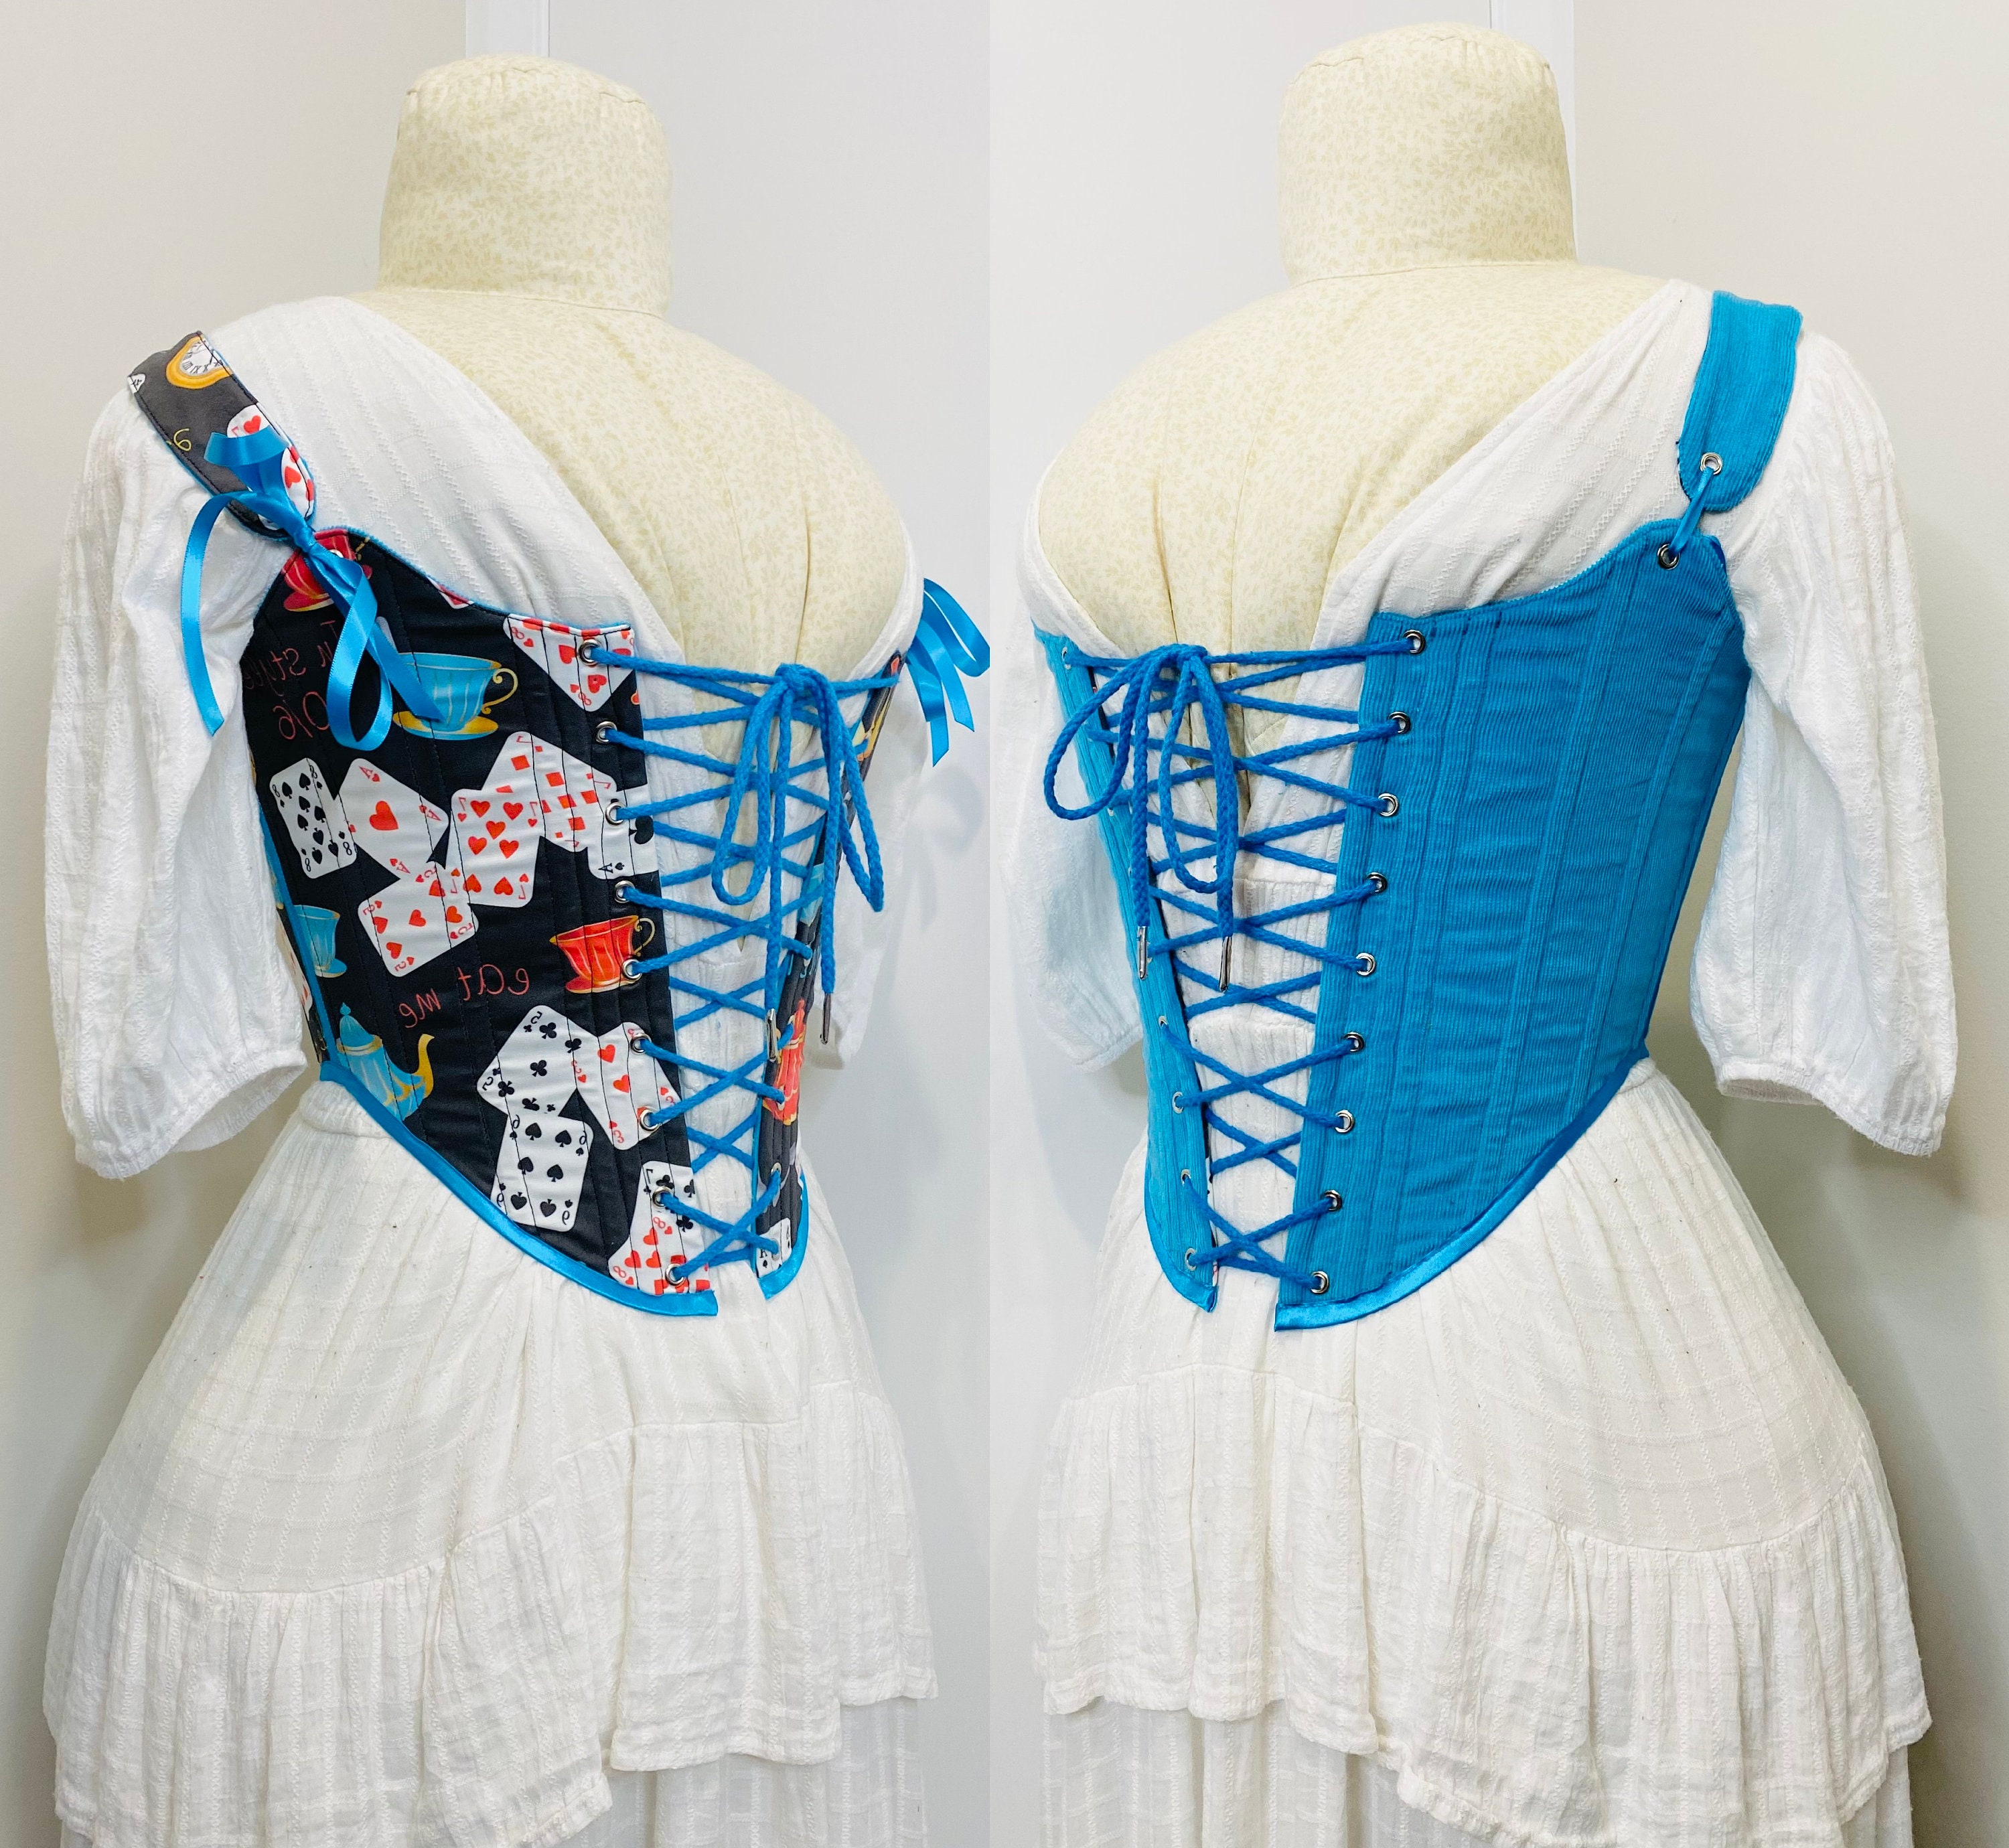 Alice in Wonderland Inspired Corset Costume, Steampunk, Victorian